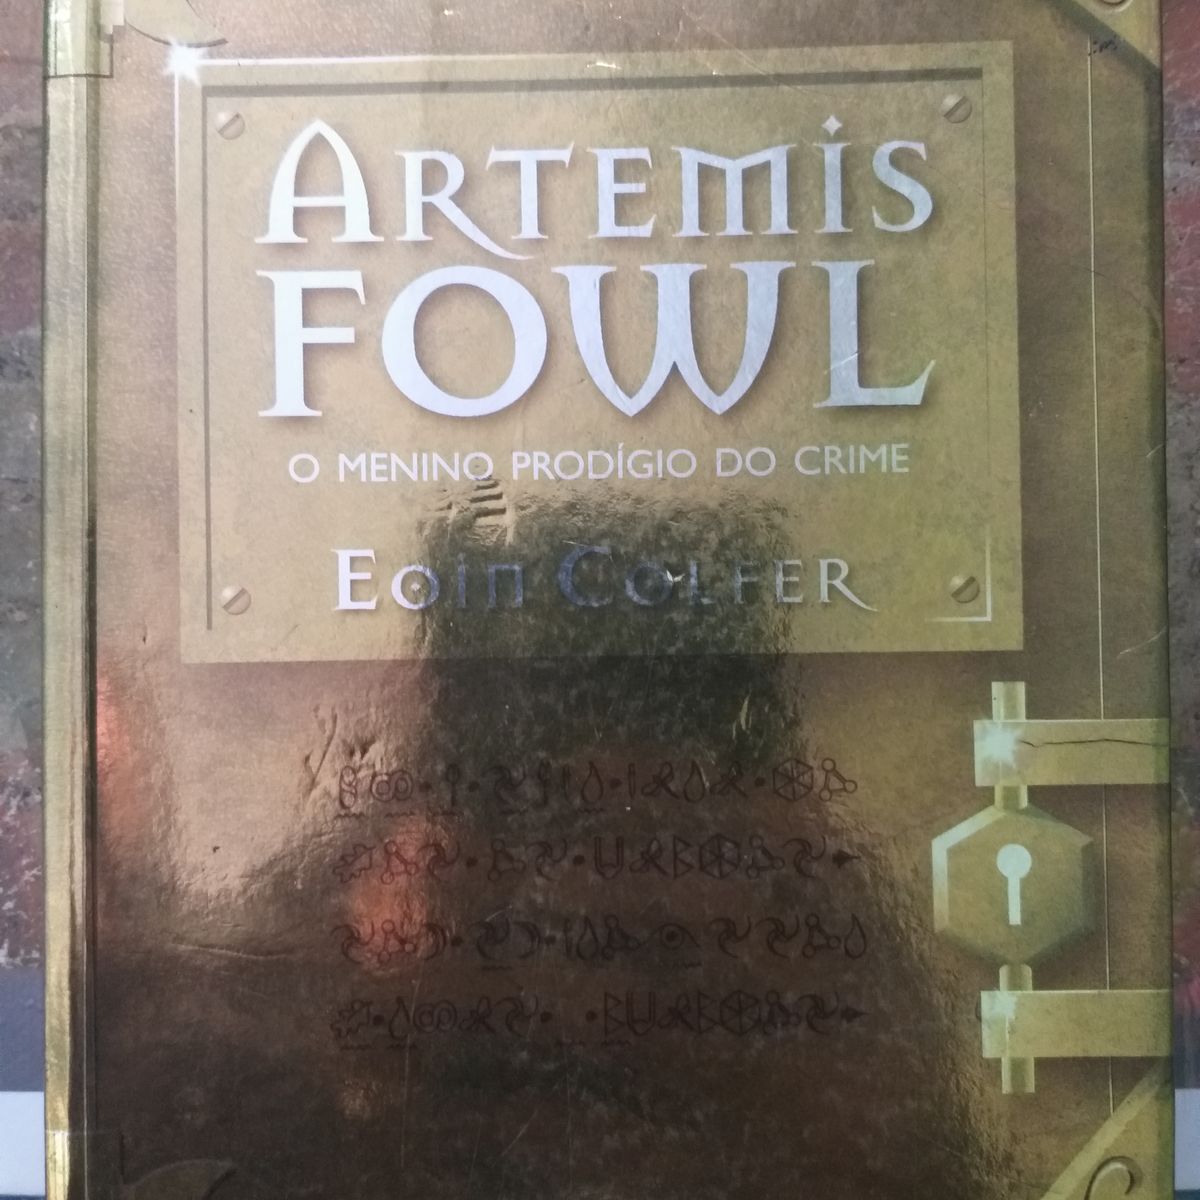 Galera Record - Em Artemis Fowl: O menino prodígio do crime, embarque em  uma jornada destemida, corajosa e, principalmente, arrepiante. O livro  inspirou o filme disponível no Disney+! ⠀ Vocês já conhecem